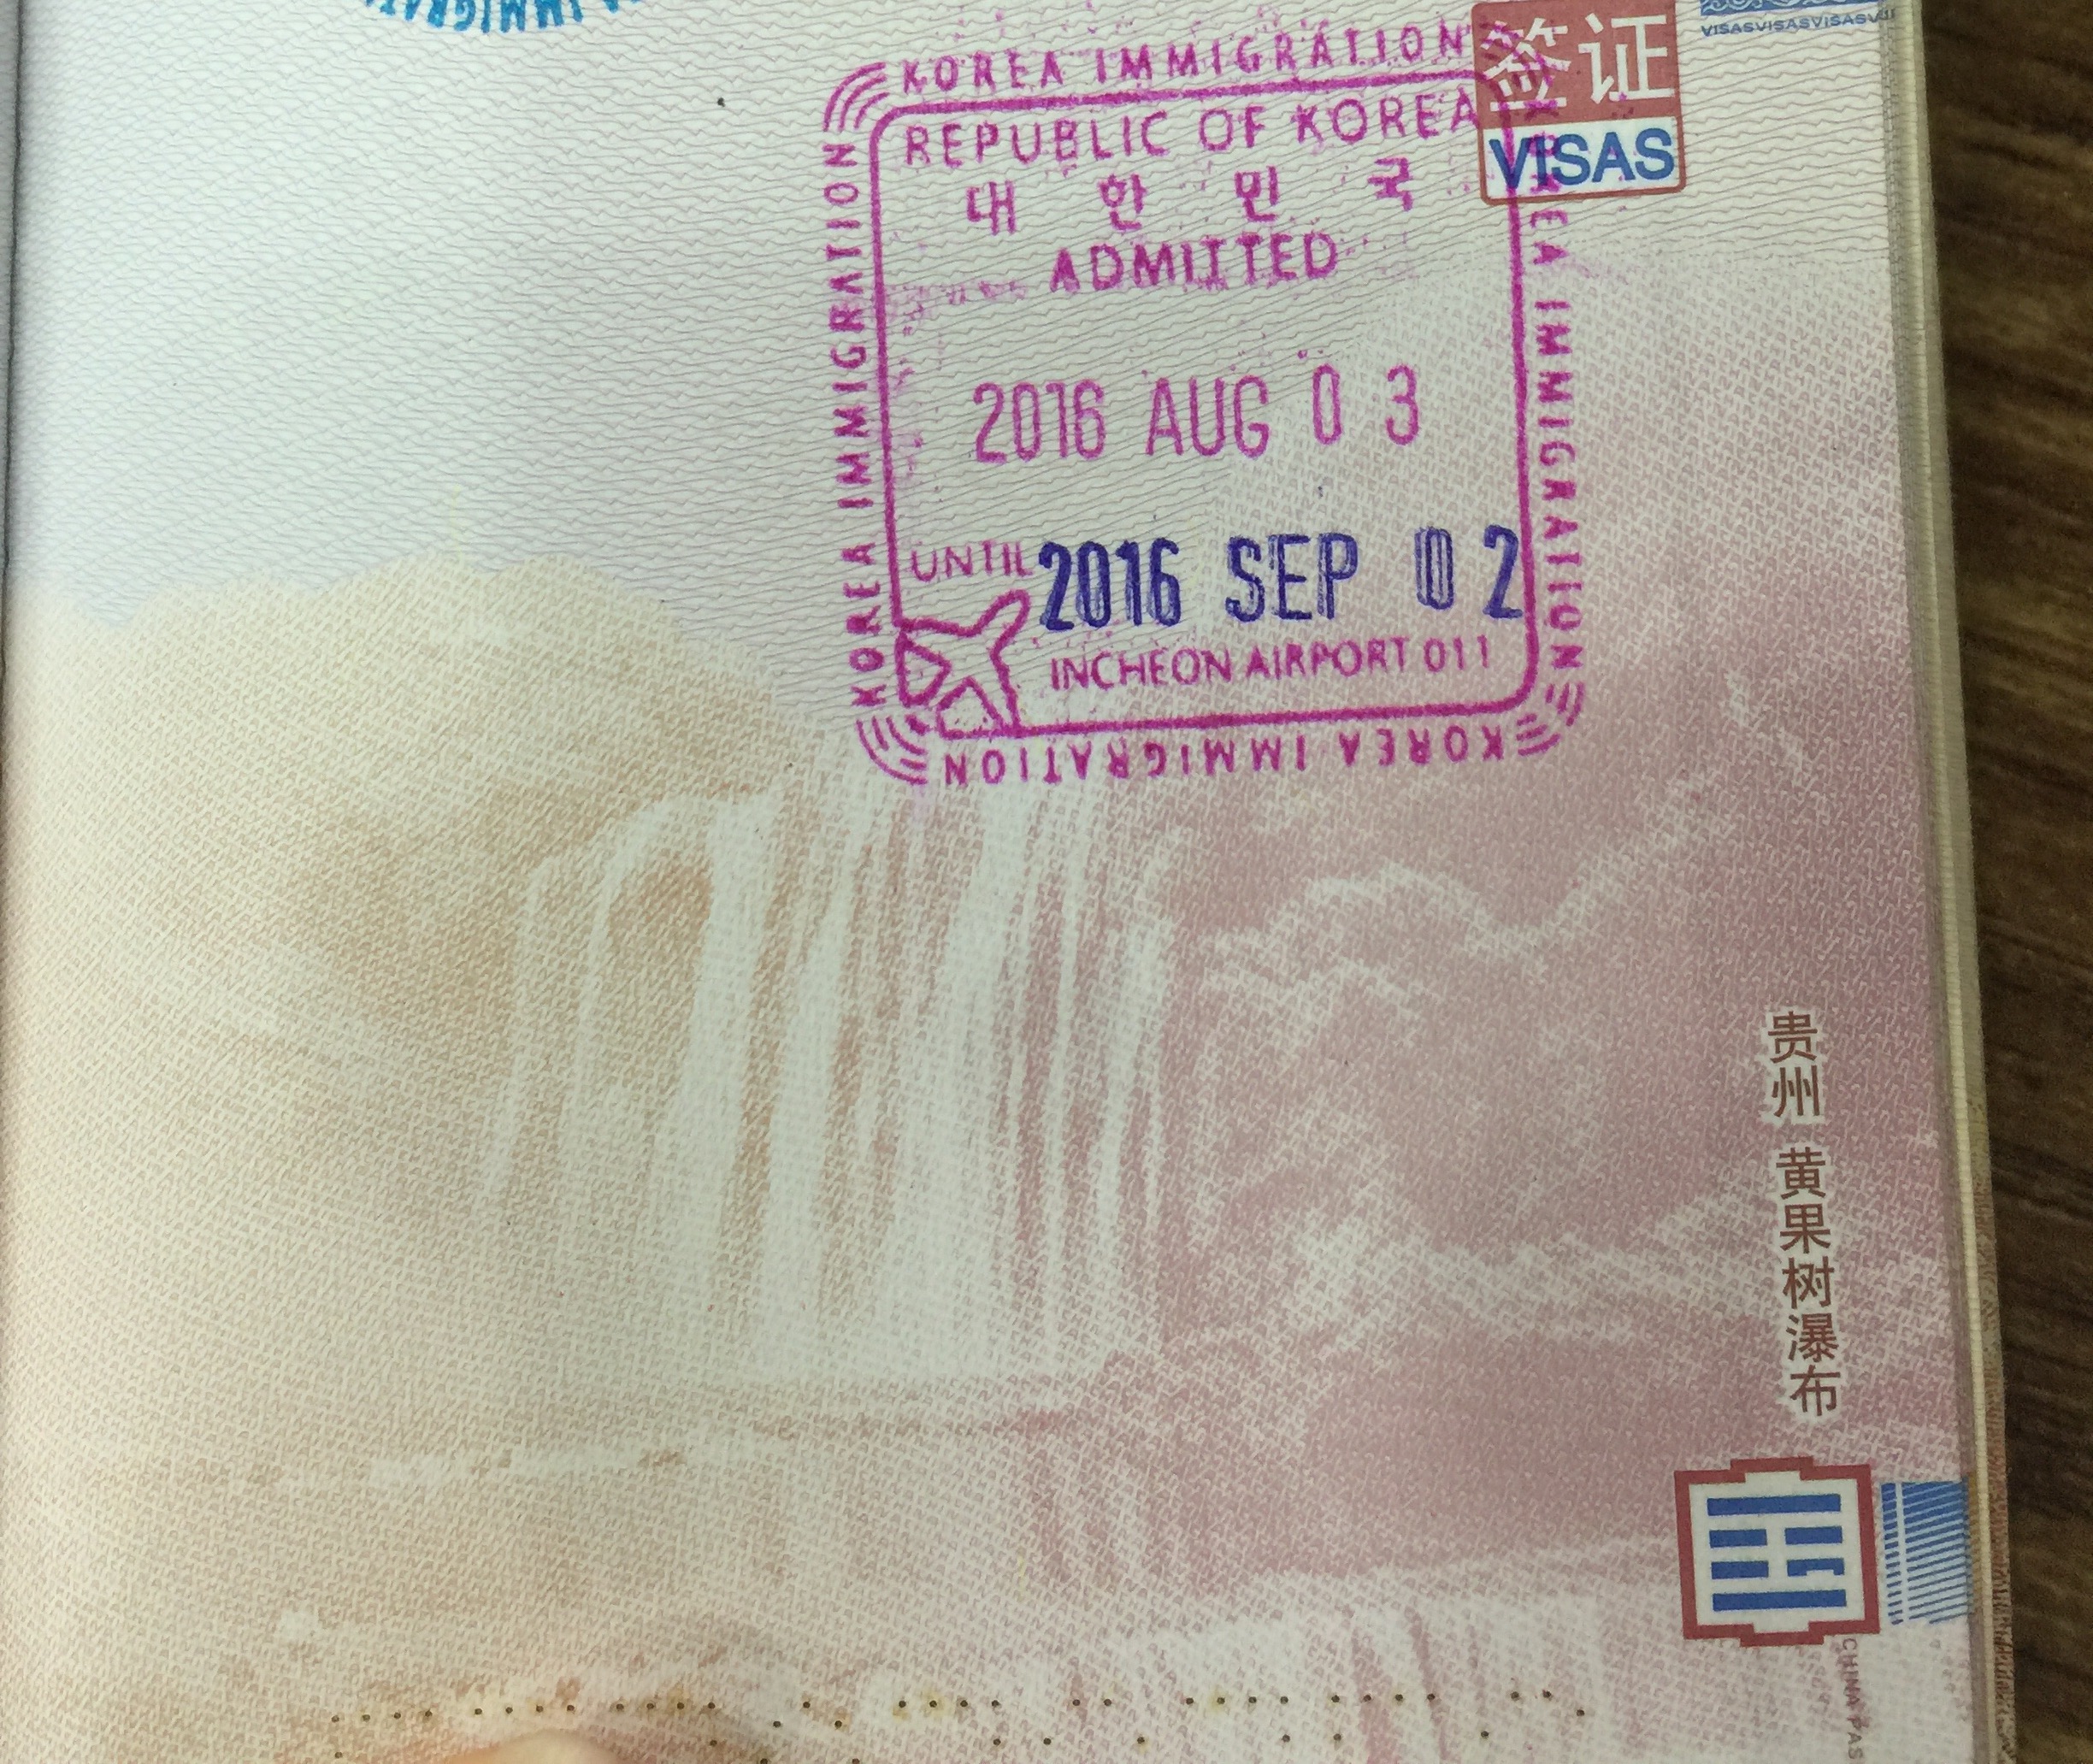 我要办韩国签证，今天问了一个旅行社，3年的，签证800块，没有押金，但是需要材料在职证明，营业执照-有没有不提供在职证明， 成功拿到韩国签证的?或者拒签的?